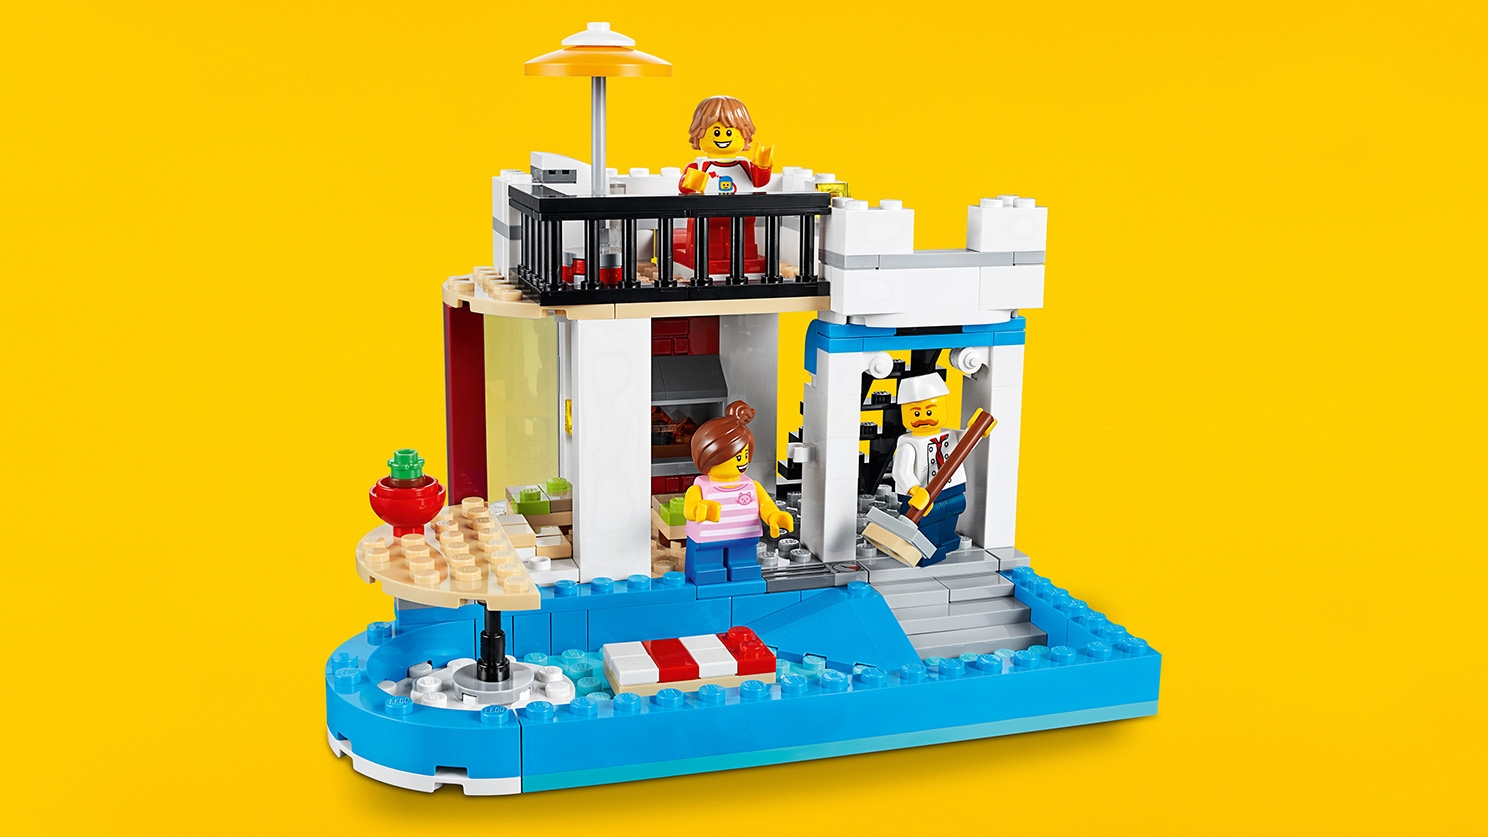 ケーキショップ モジュール式 レゴ クリエイターセット Lego Comキッズ